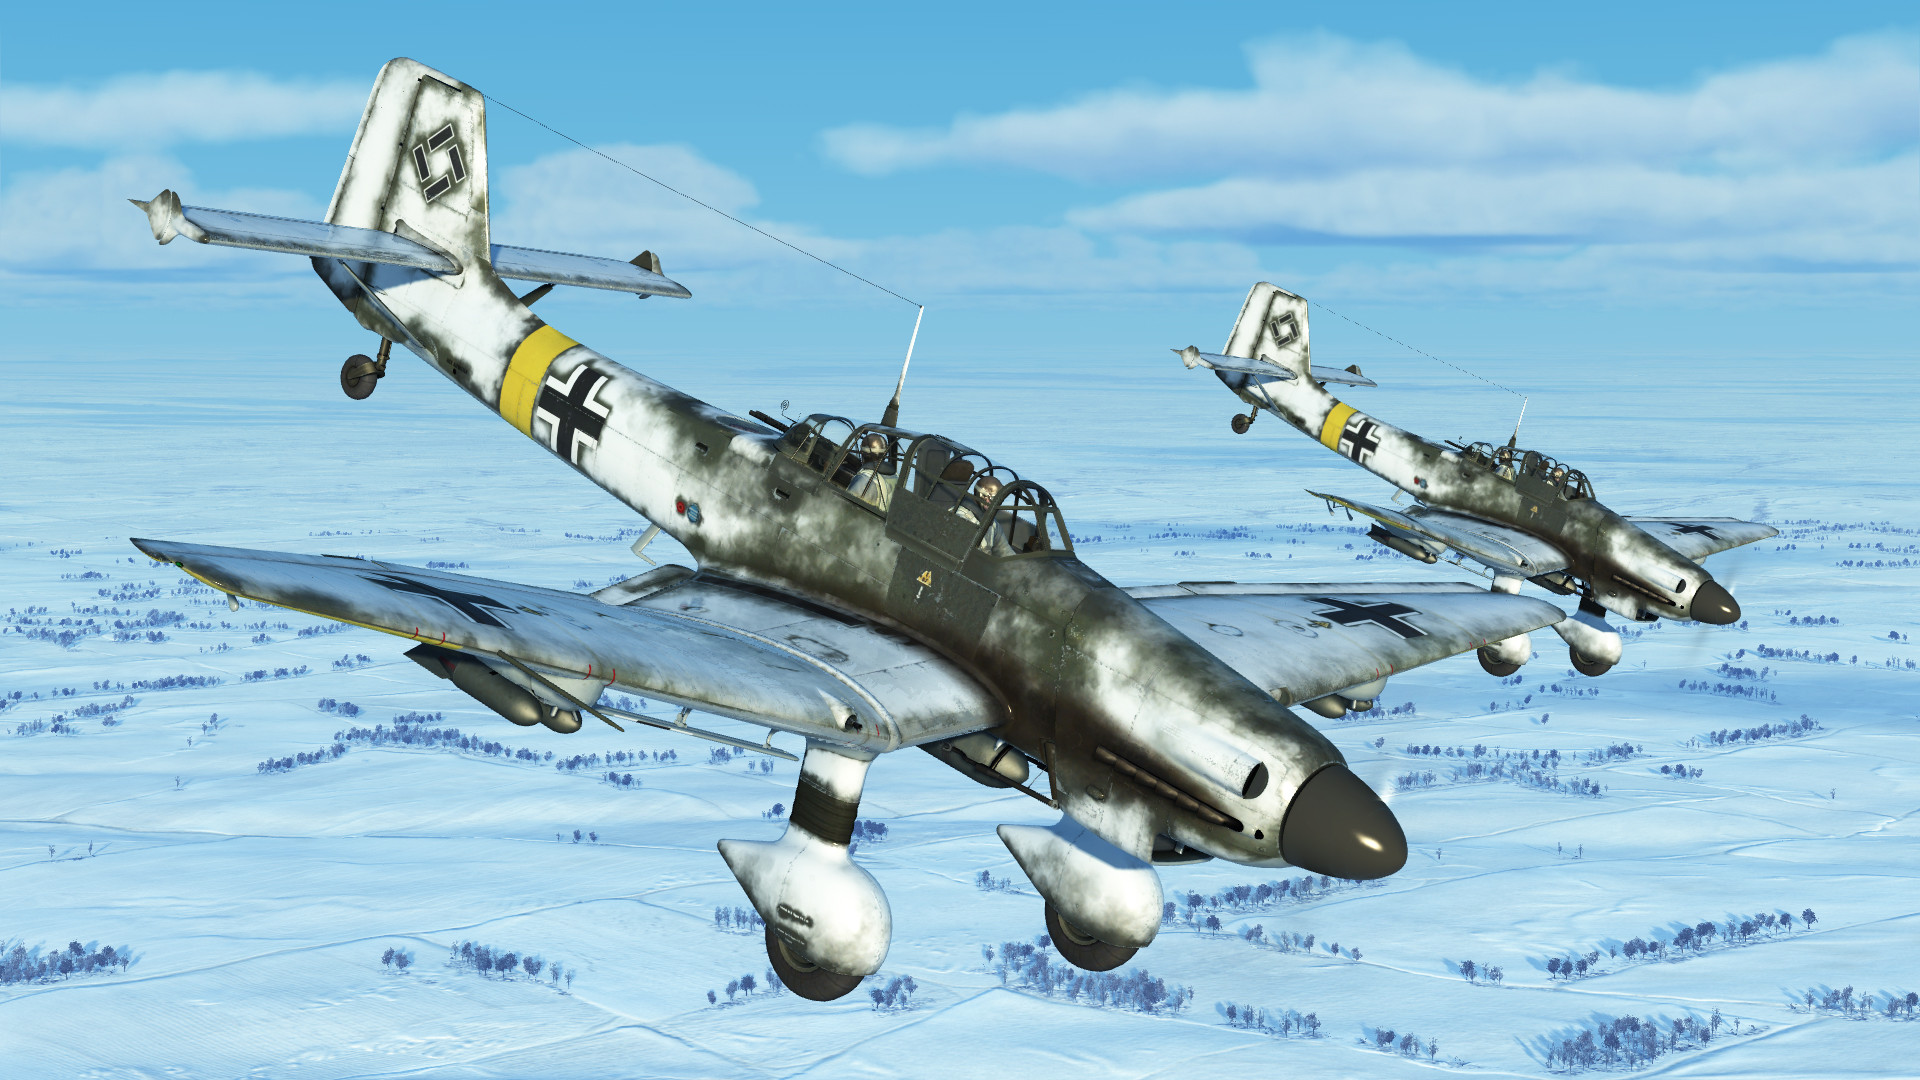 IL-2 Sturmovik: Ice Ring Campaign screenshot